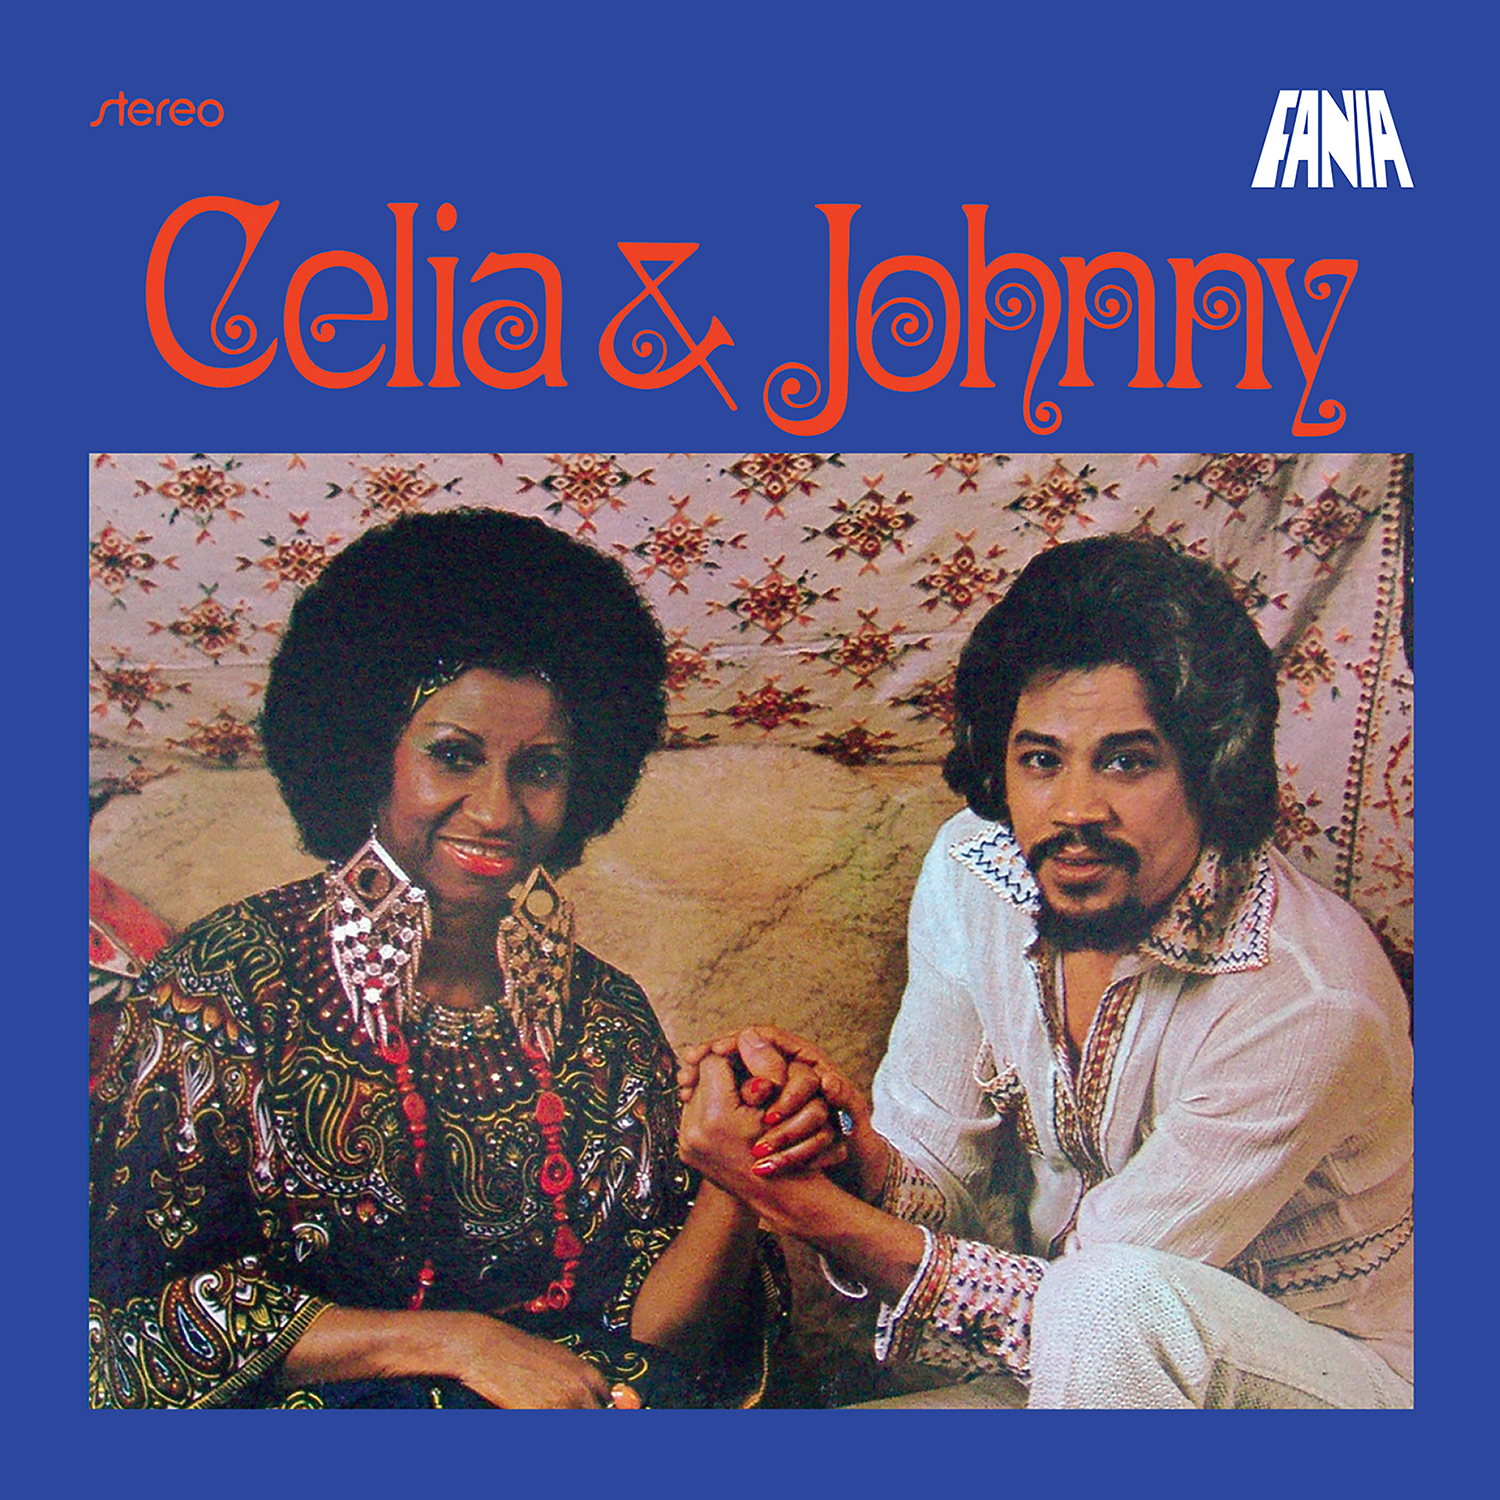 Celia & Johnny album cover